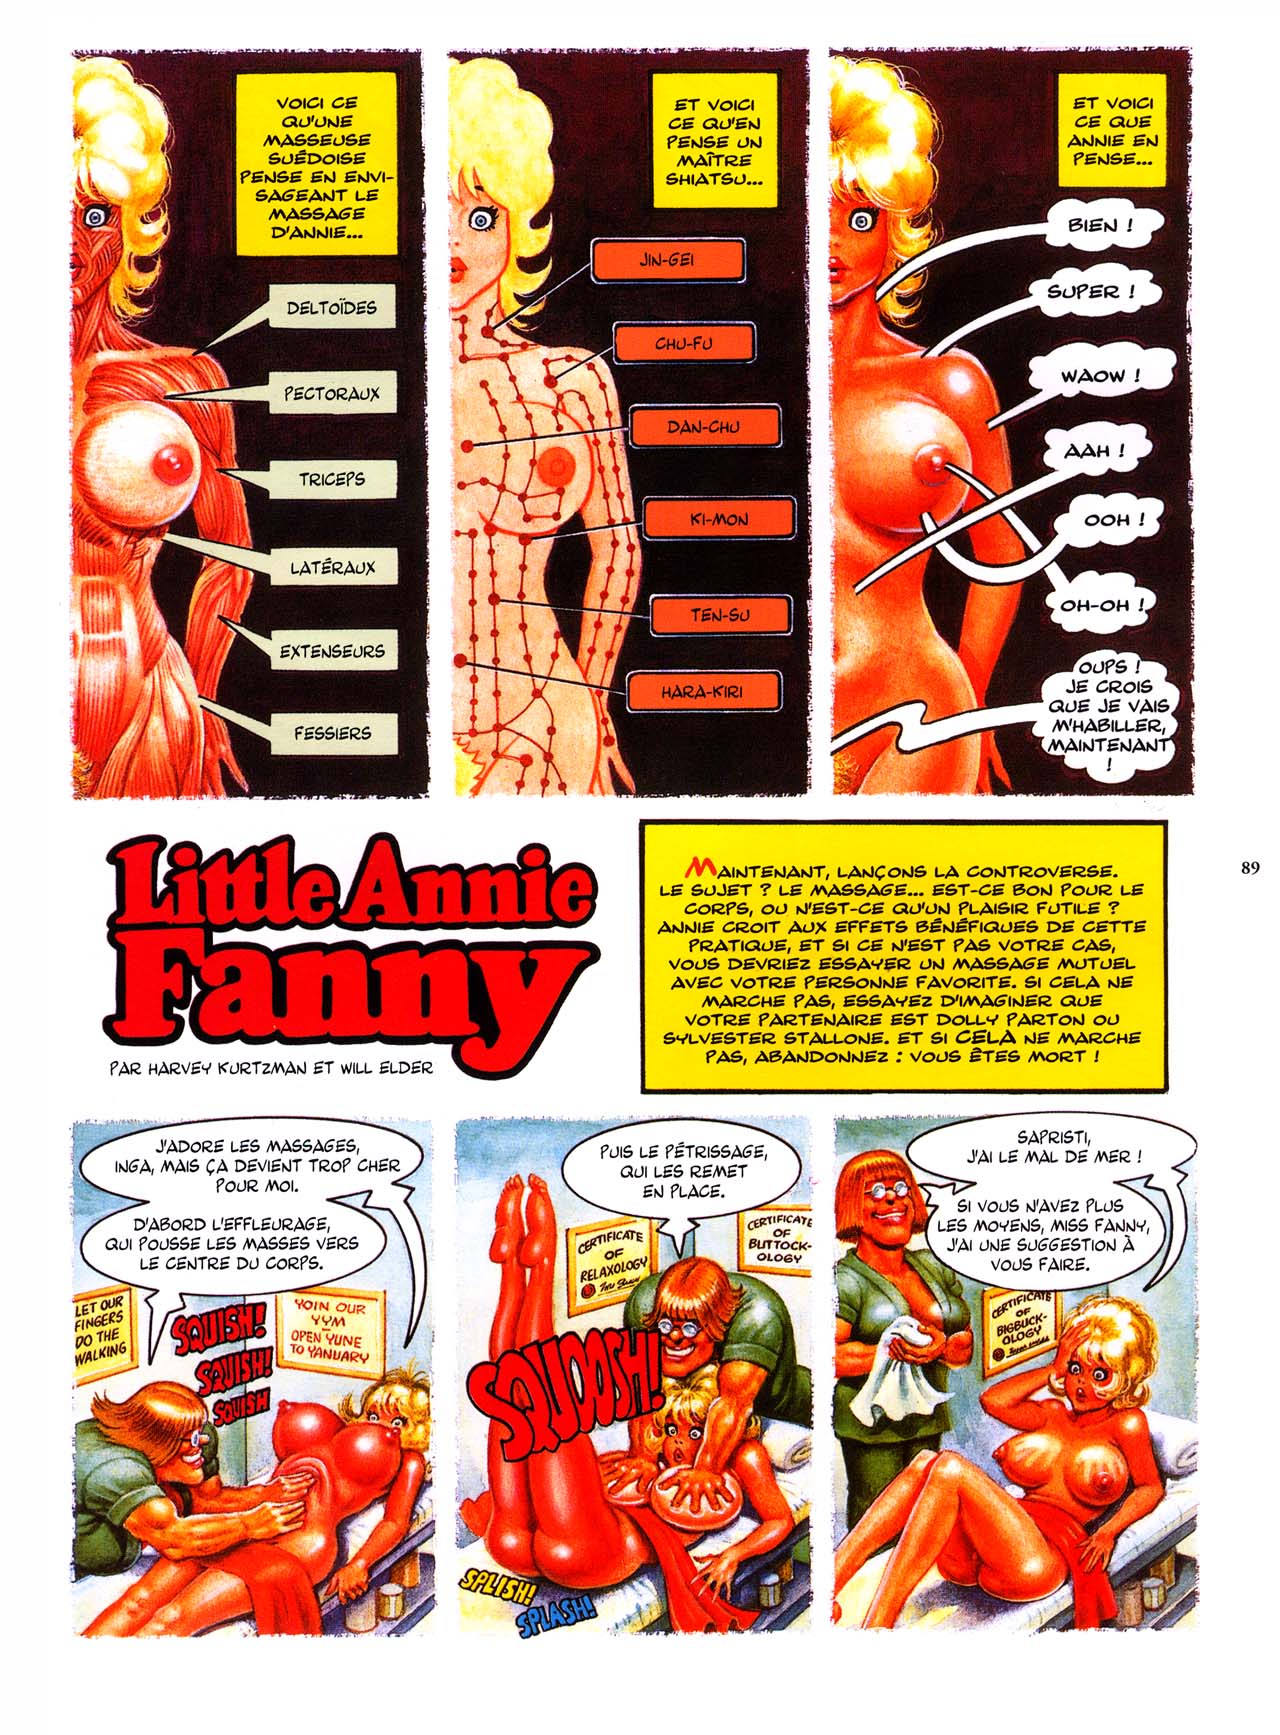 Little Annie Fanny - 04 - 78-88 numero d'image 87